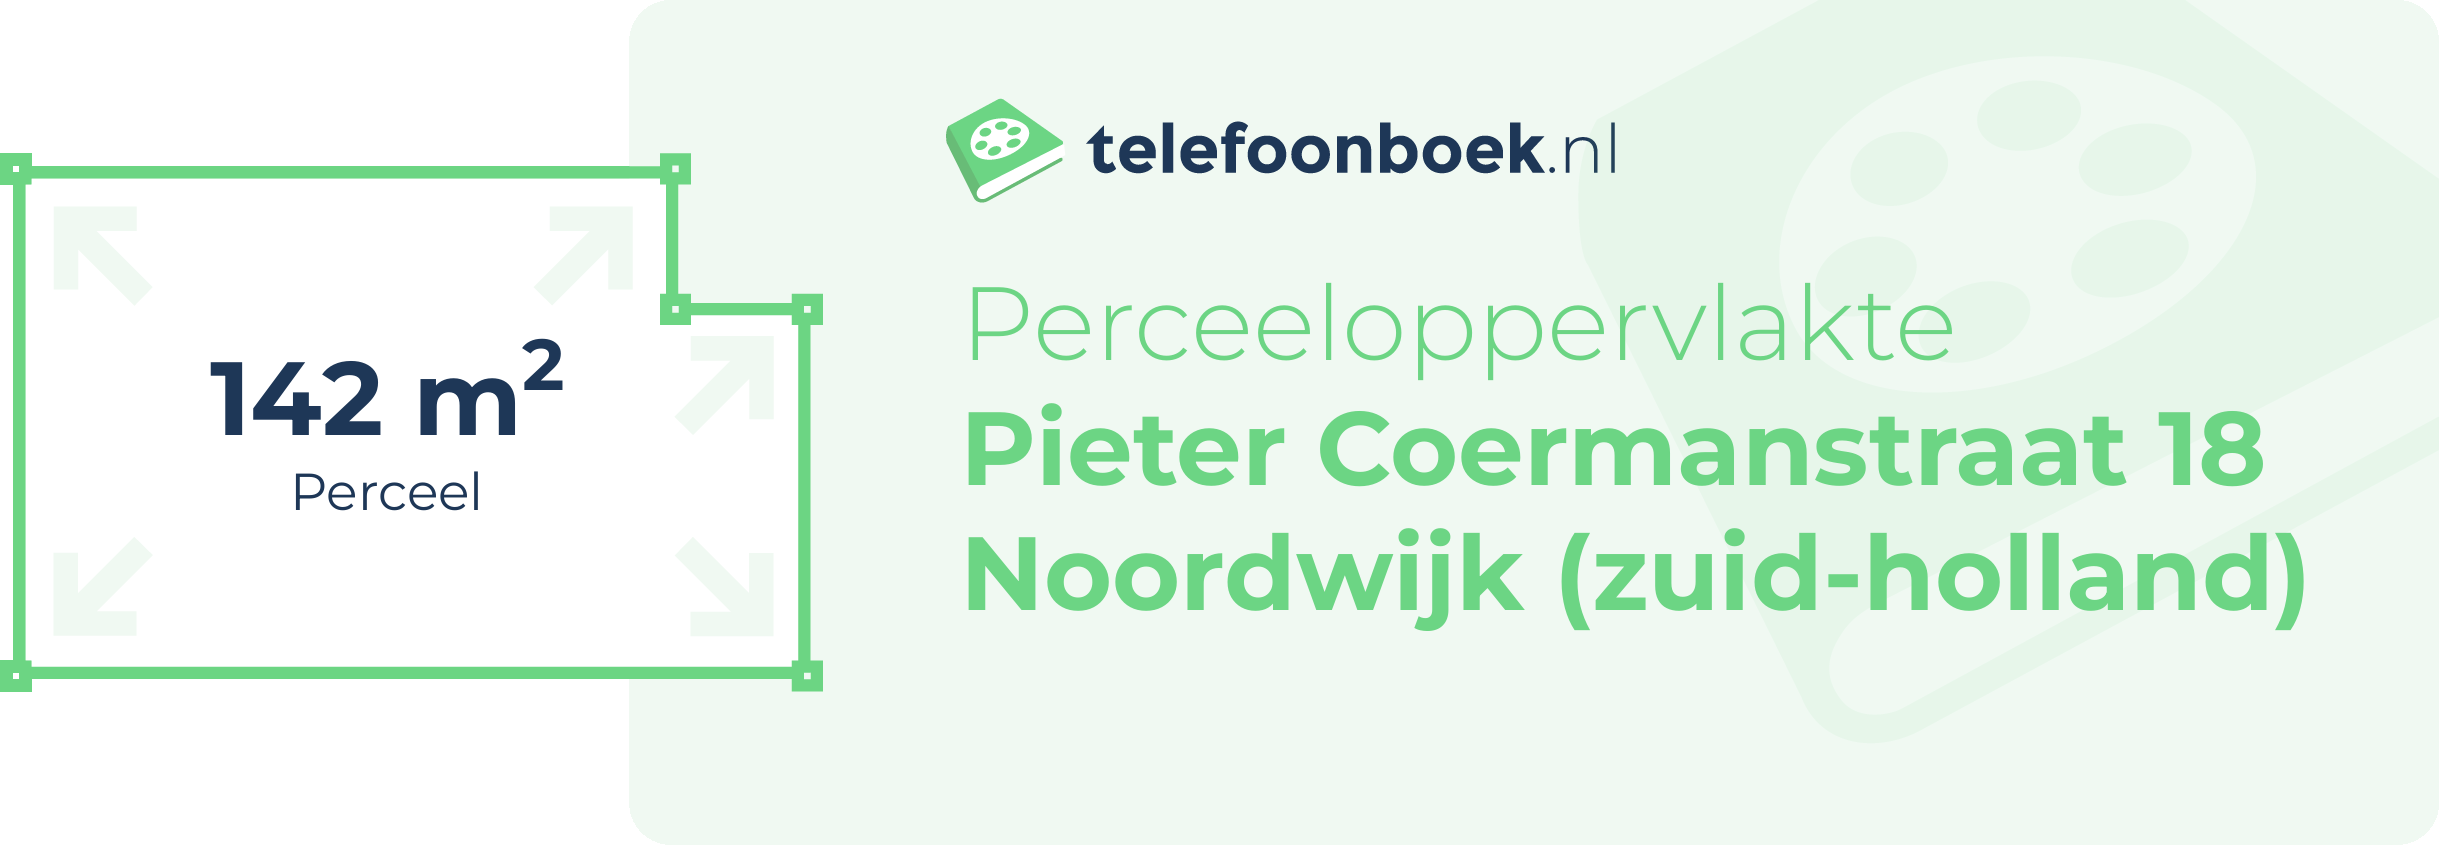 Perceeloppervlakte Pieter Coermanstraat 18 Noordwijk (Zuid-Holland)